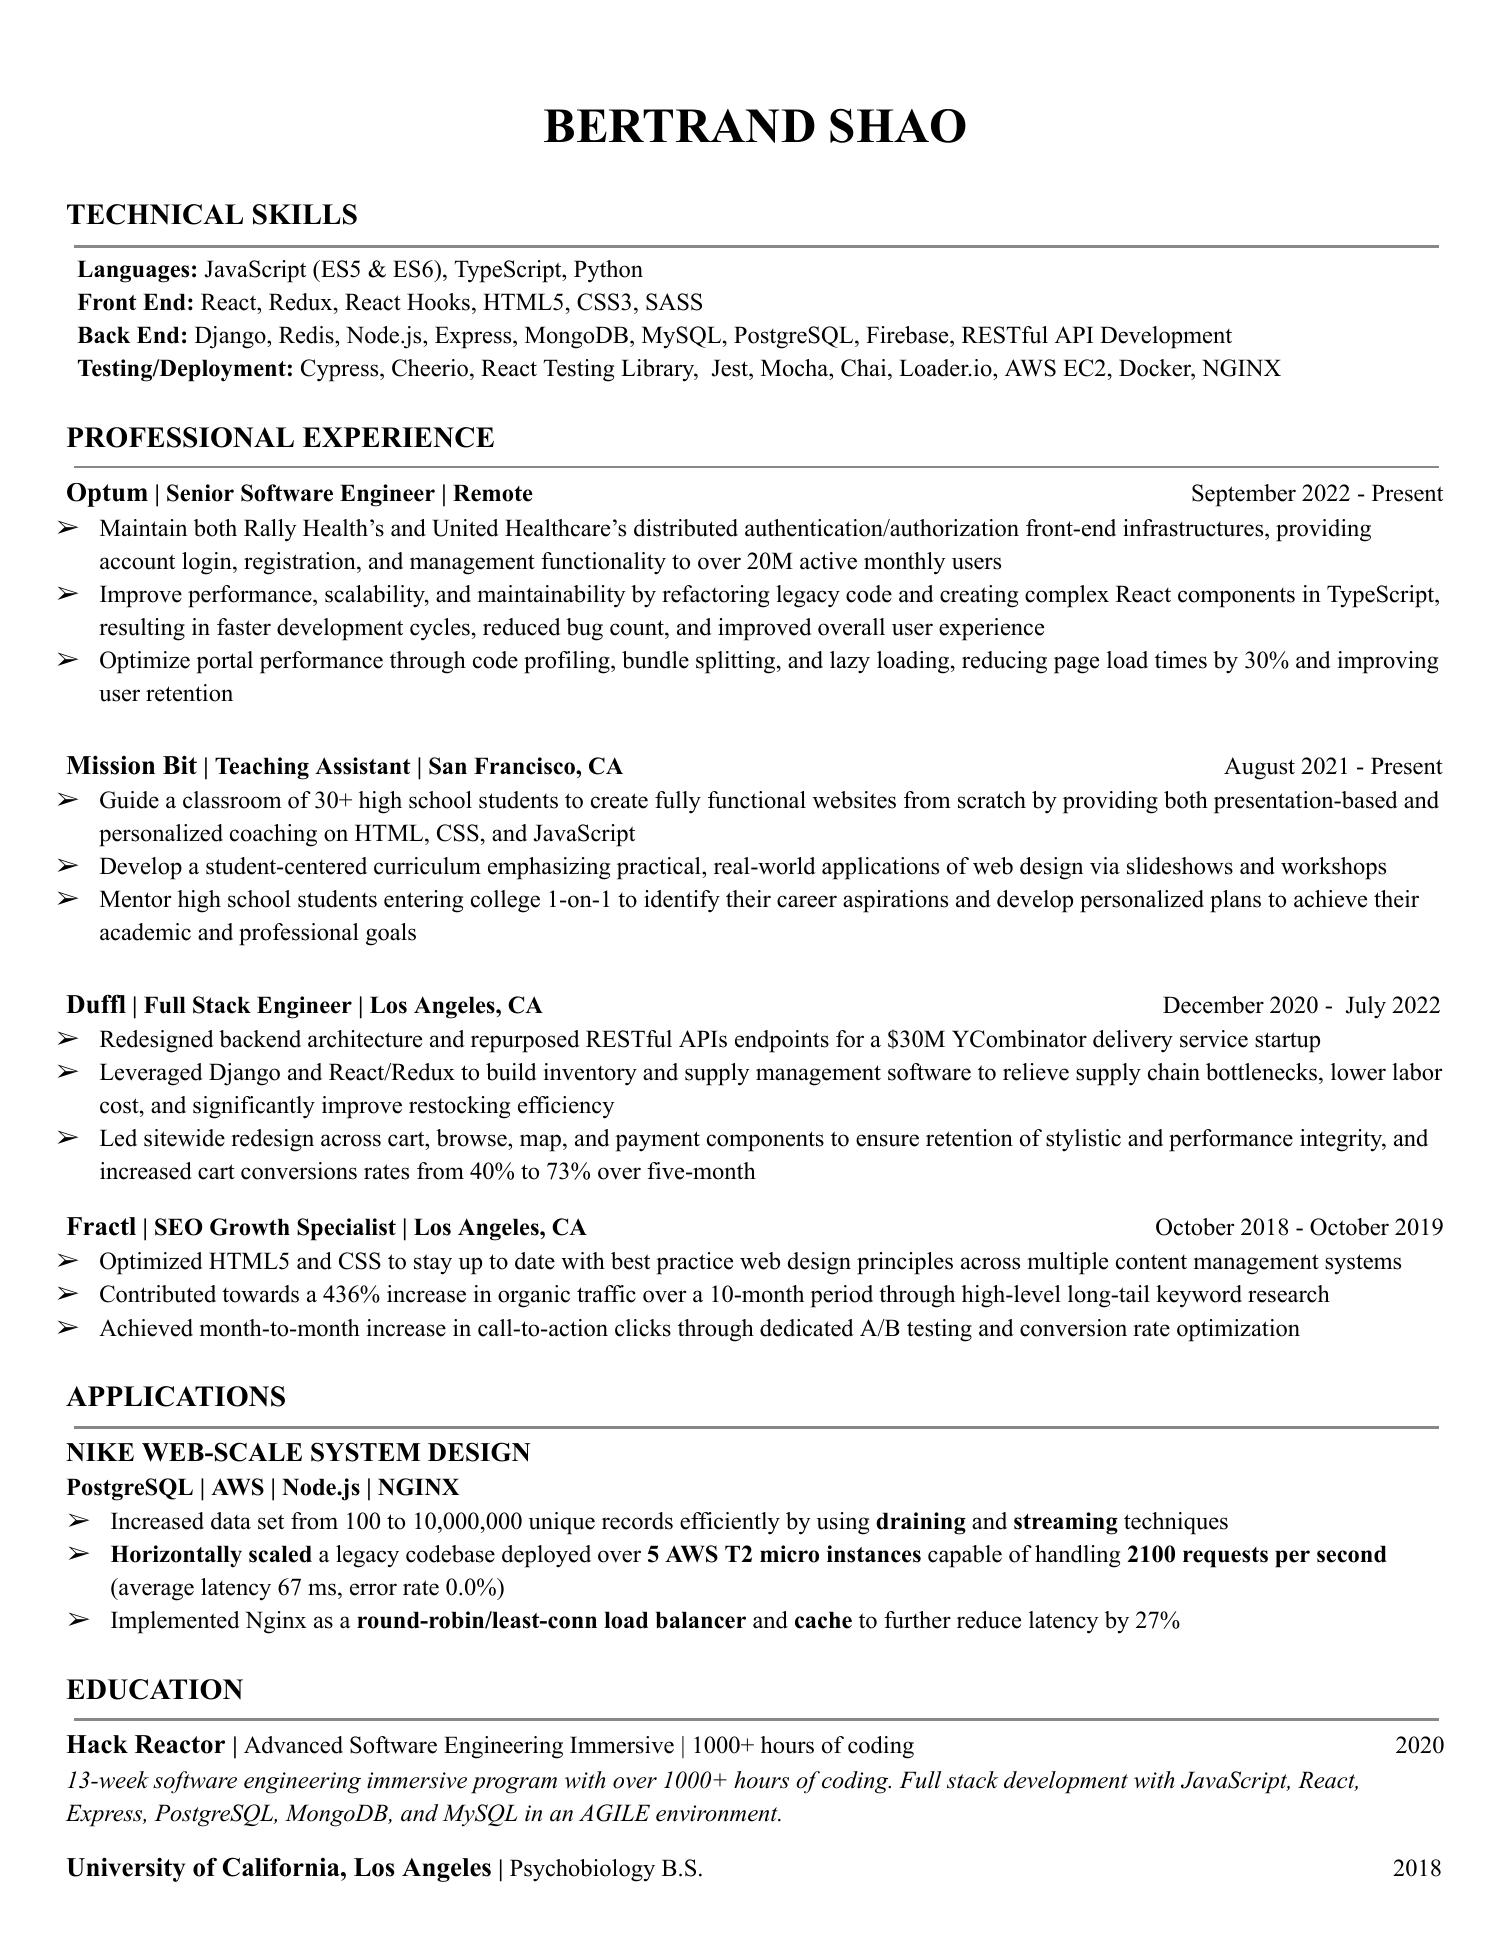 resume format 2022 pdf